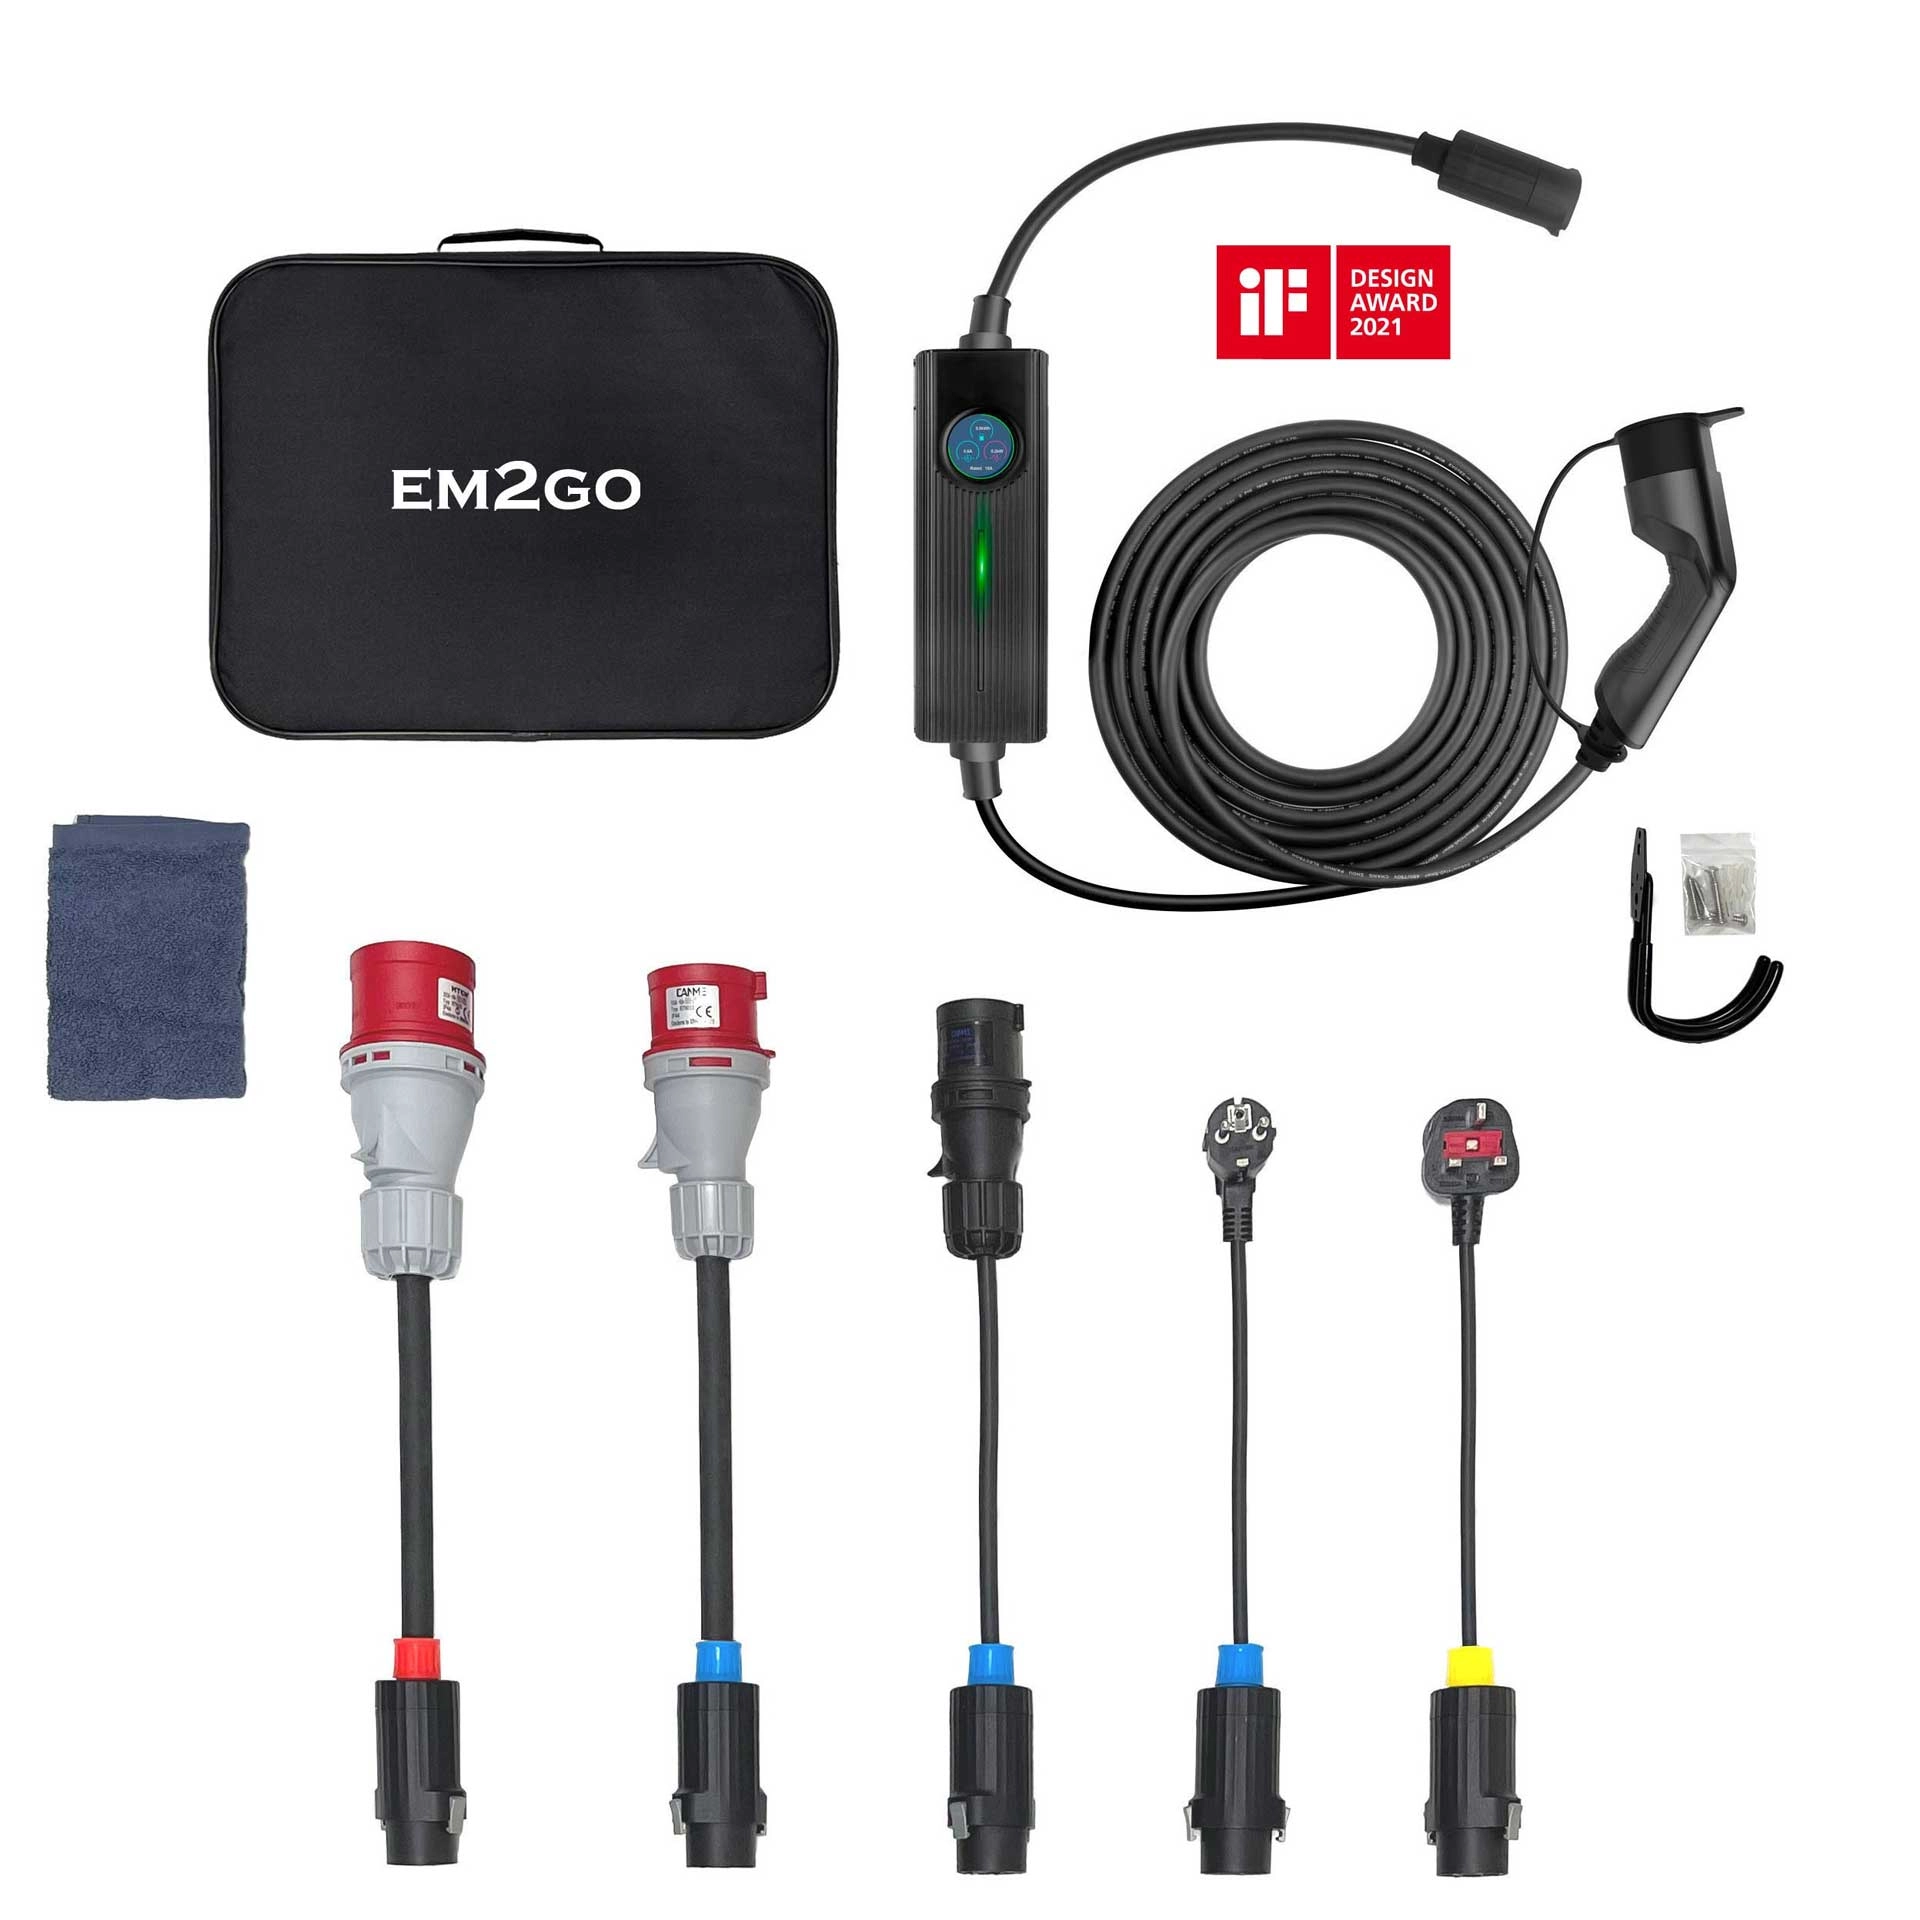 EM2GO mobiles Ladesystem für E-Fahrzeuge inkl. 5 Adapter